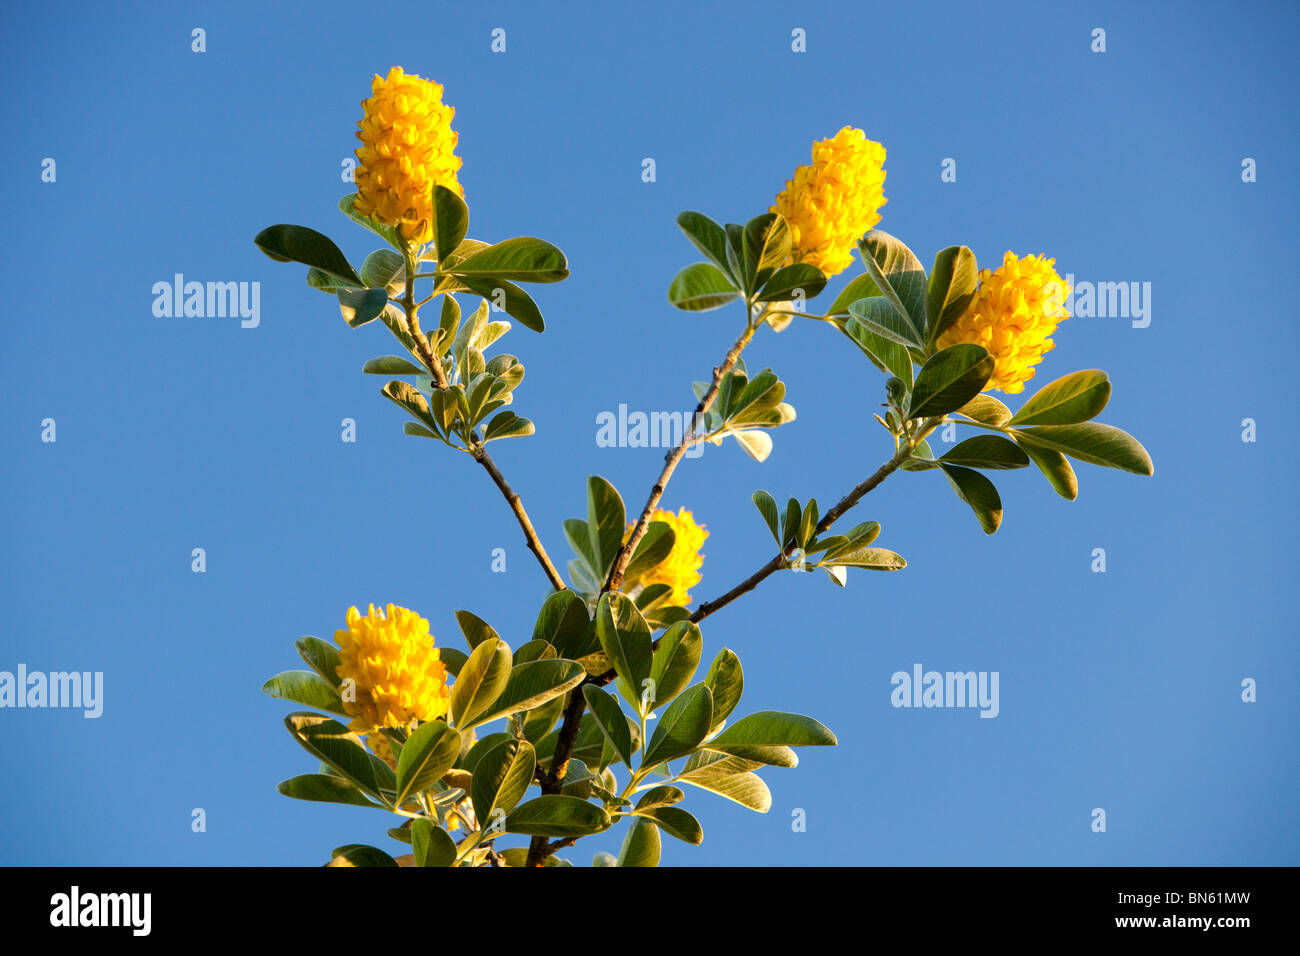 Blumen auf einem Ananas-Baum Stockfotografie - Alamy